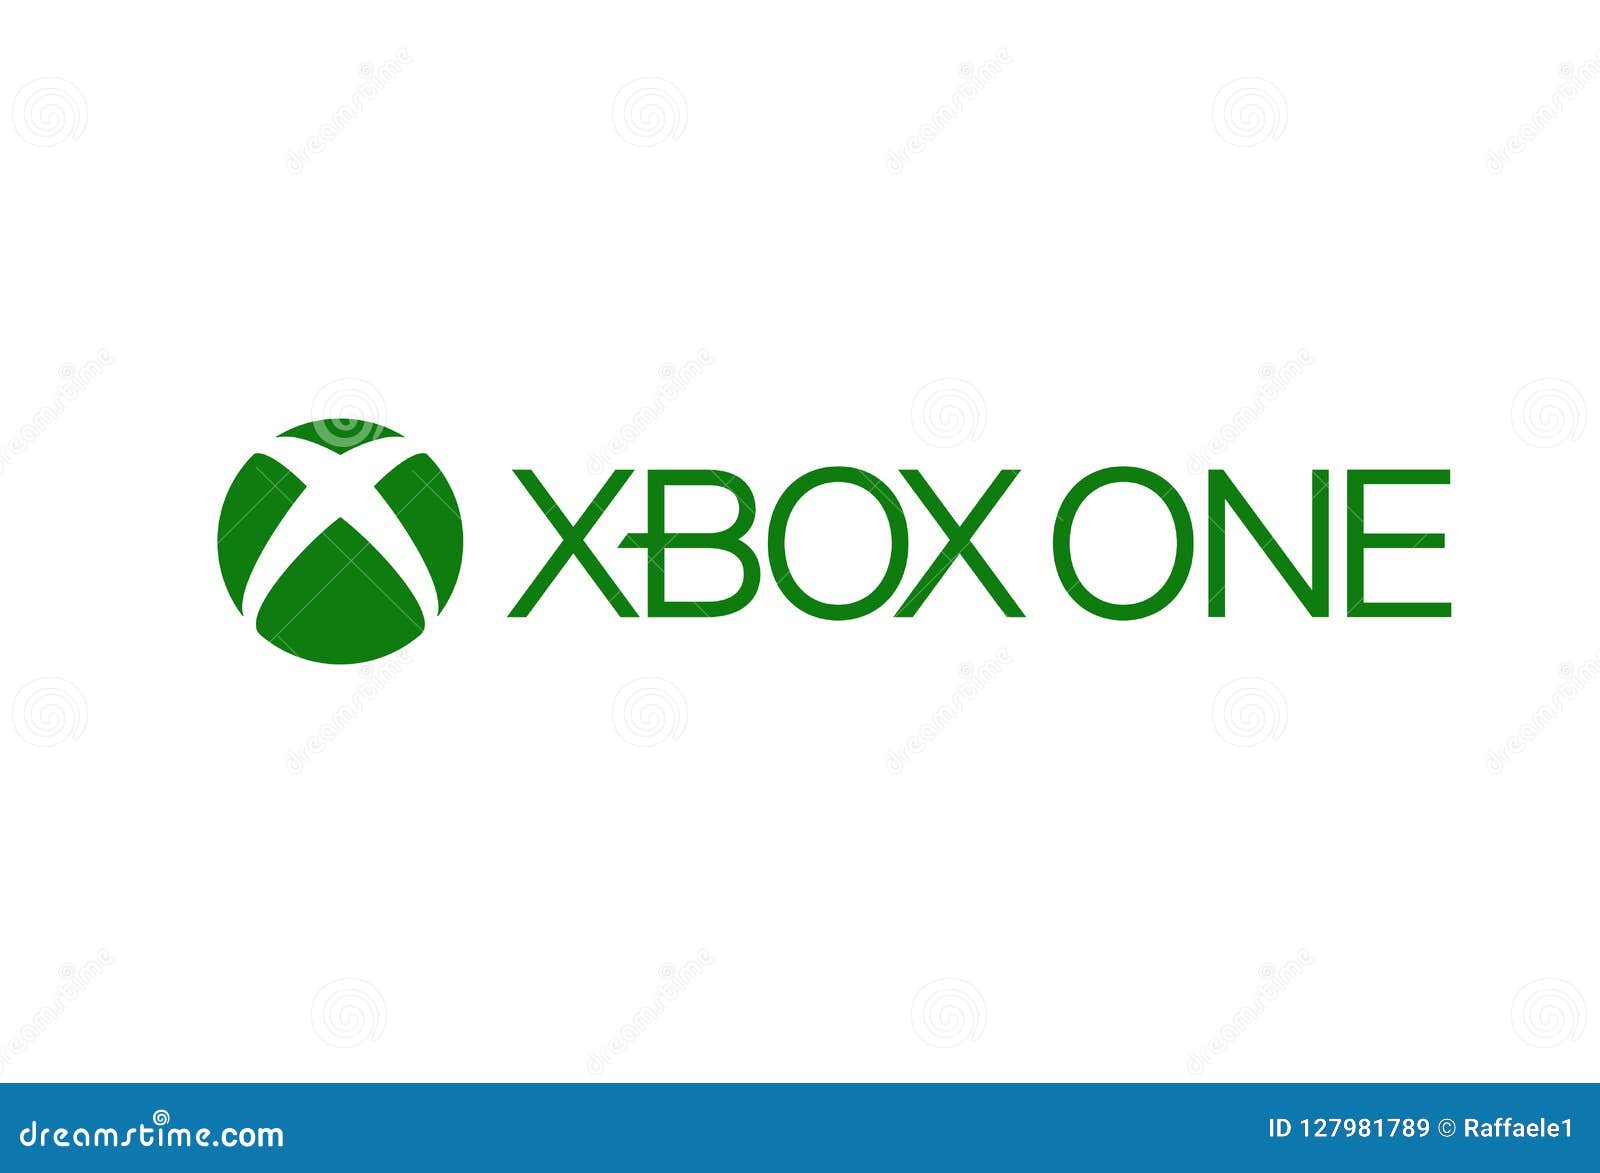 Tìm kiếm hình ảnh XBOX One Logo để khám phá thế giới giải trí điện tử tuyệt vời cùng Xbox! Hình ảnh logo sắc nét và chất lượng, cho bạn sự chân thực và ấn tượng nhất về một trong những thương hiệu game hàng đầu thế giới.